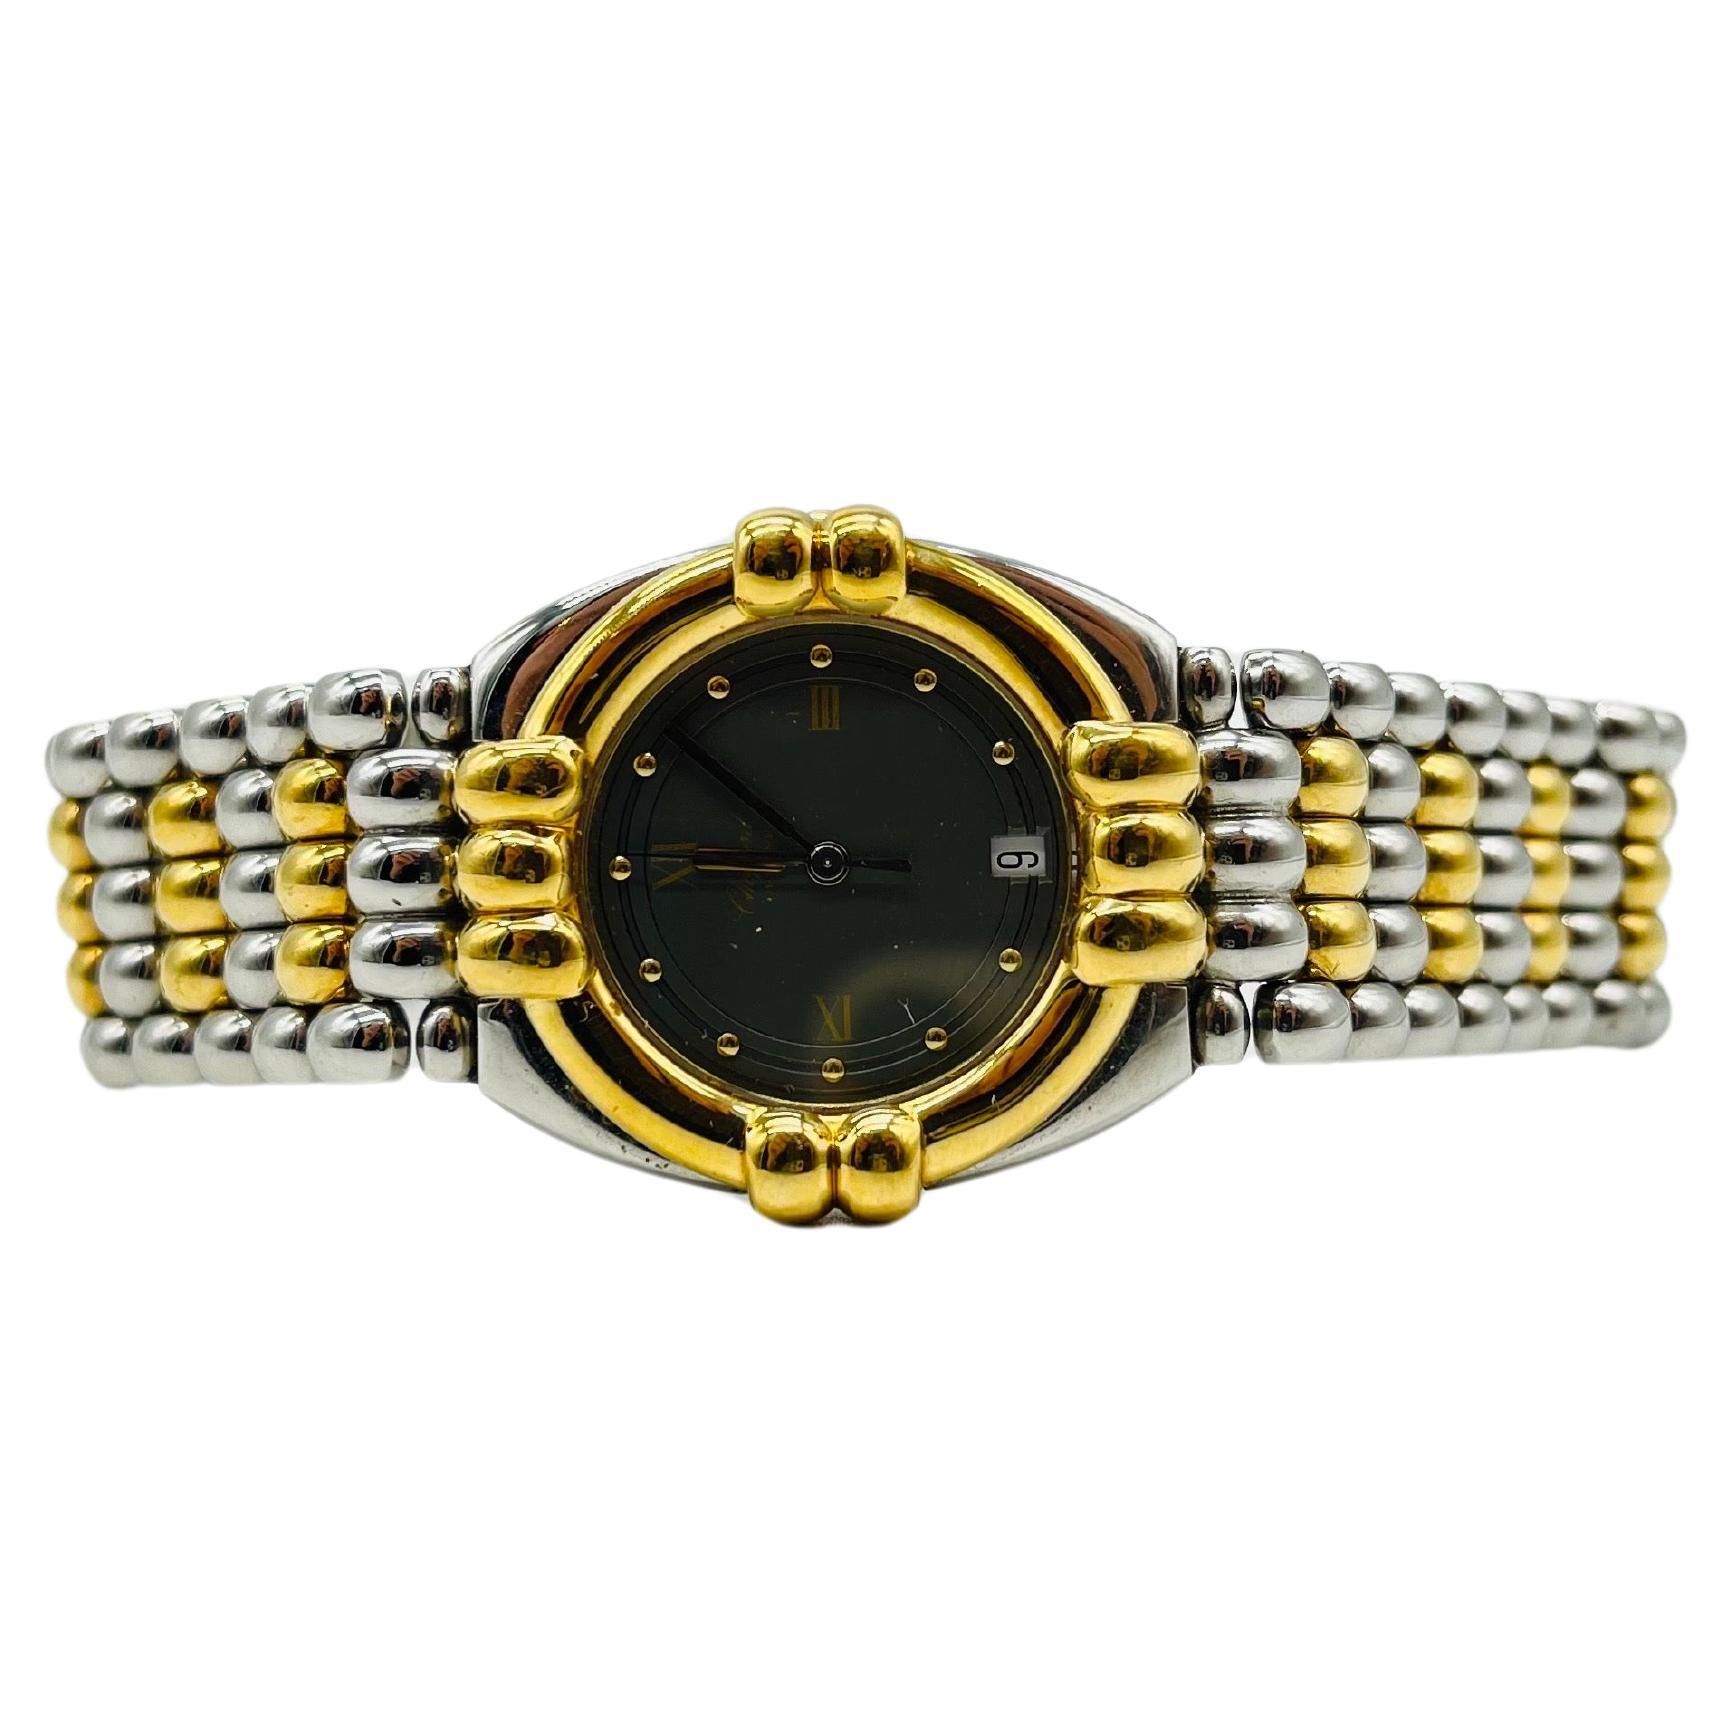 Majestic Chopard genve wrist watch Gstaad 33/8120 For Sale